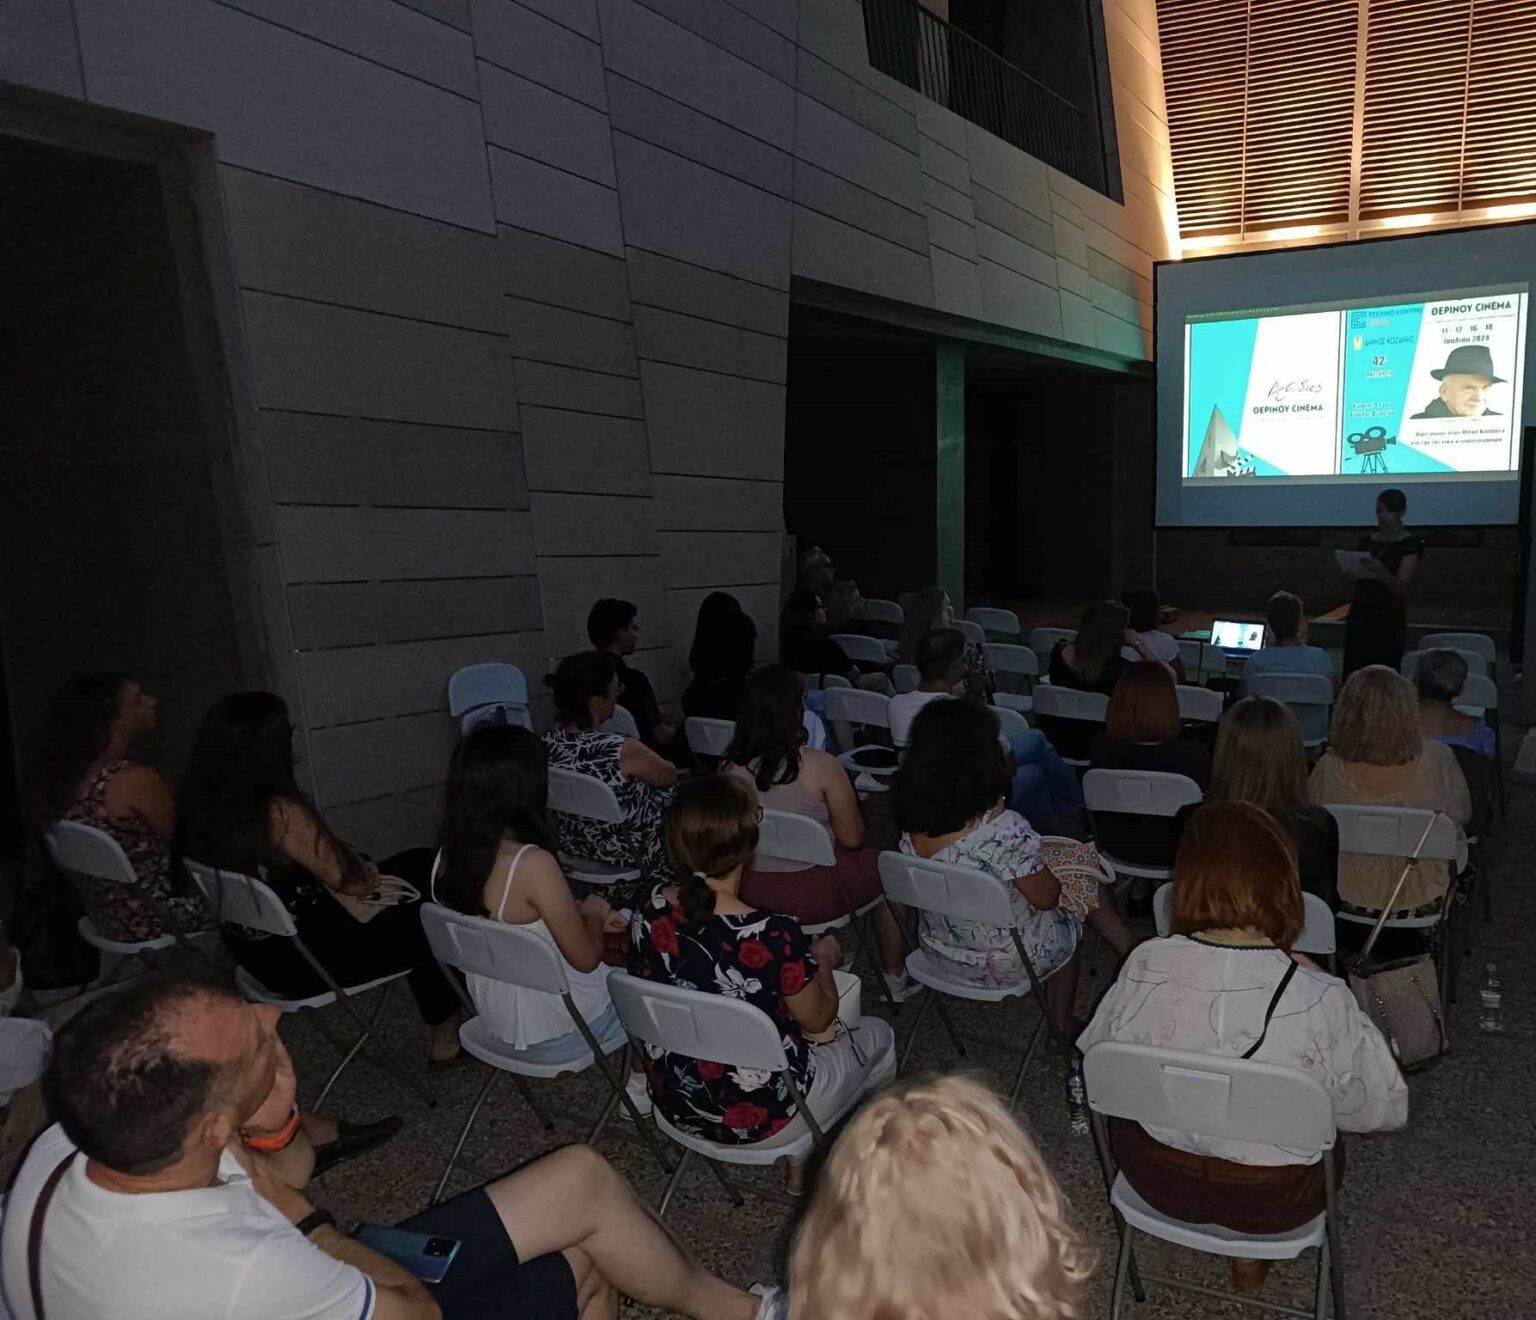 Δήμος Κοζάνης: Βραδιά Θερινού Σινεμά στην Κοβεντάρειο Δημοτική Βιβλιοθήκη με ελεύθερη είσοδο (Φωτογραφίες)